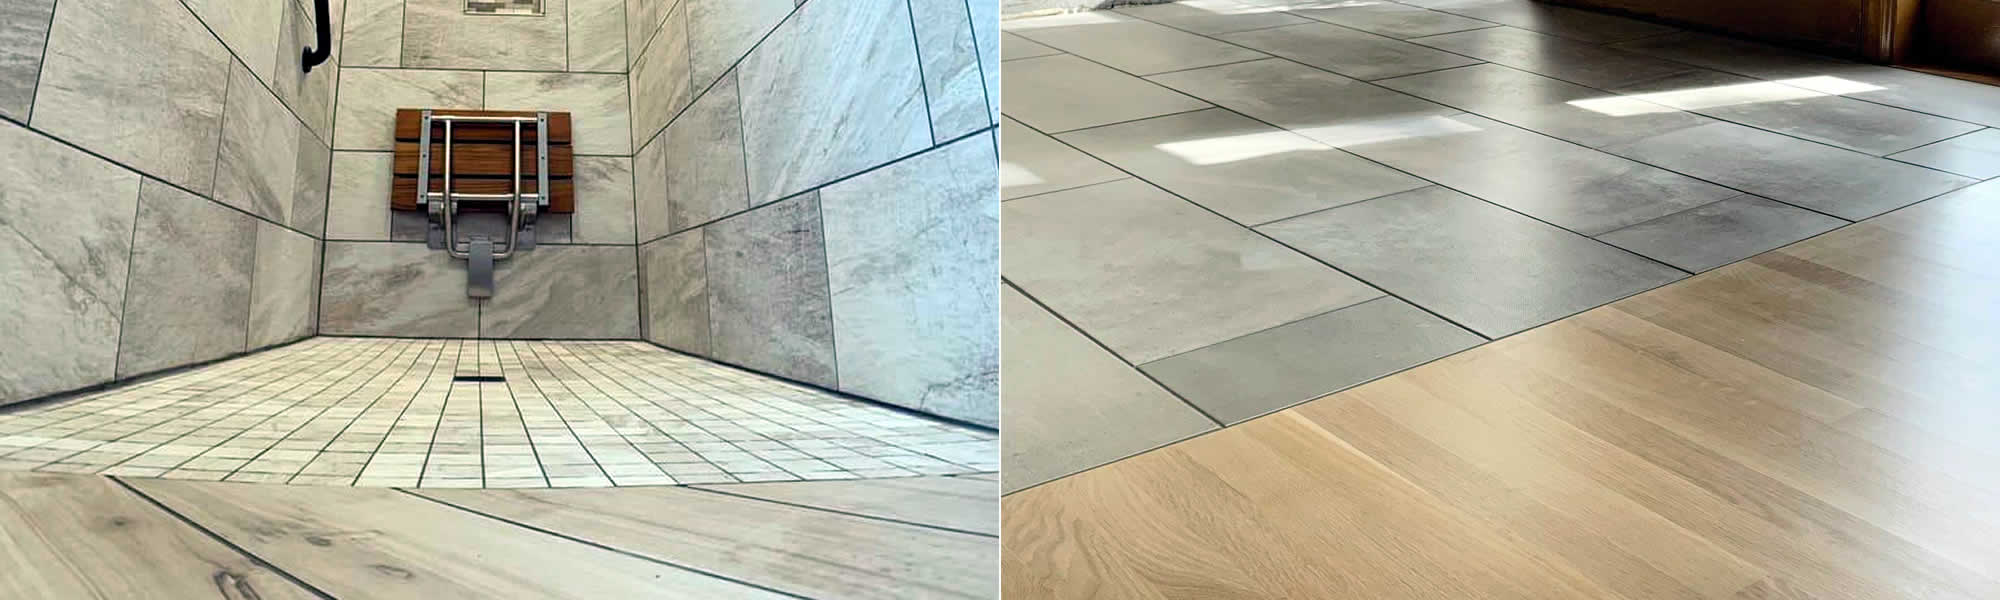 Tile+Wood+Carpet Flooring Center near me